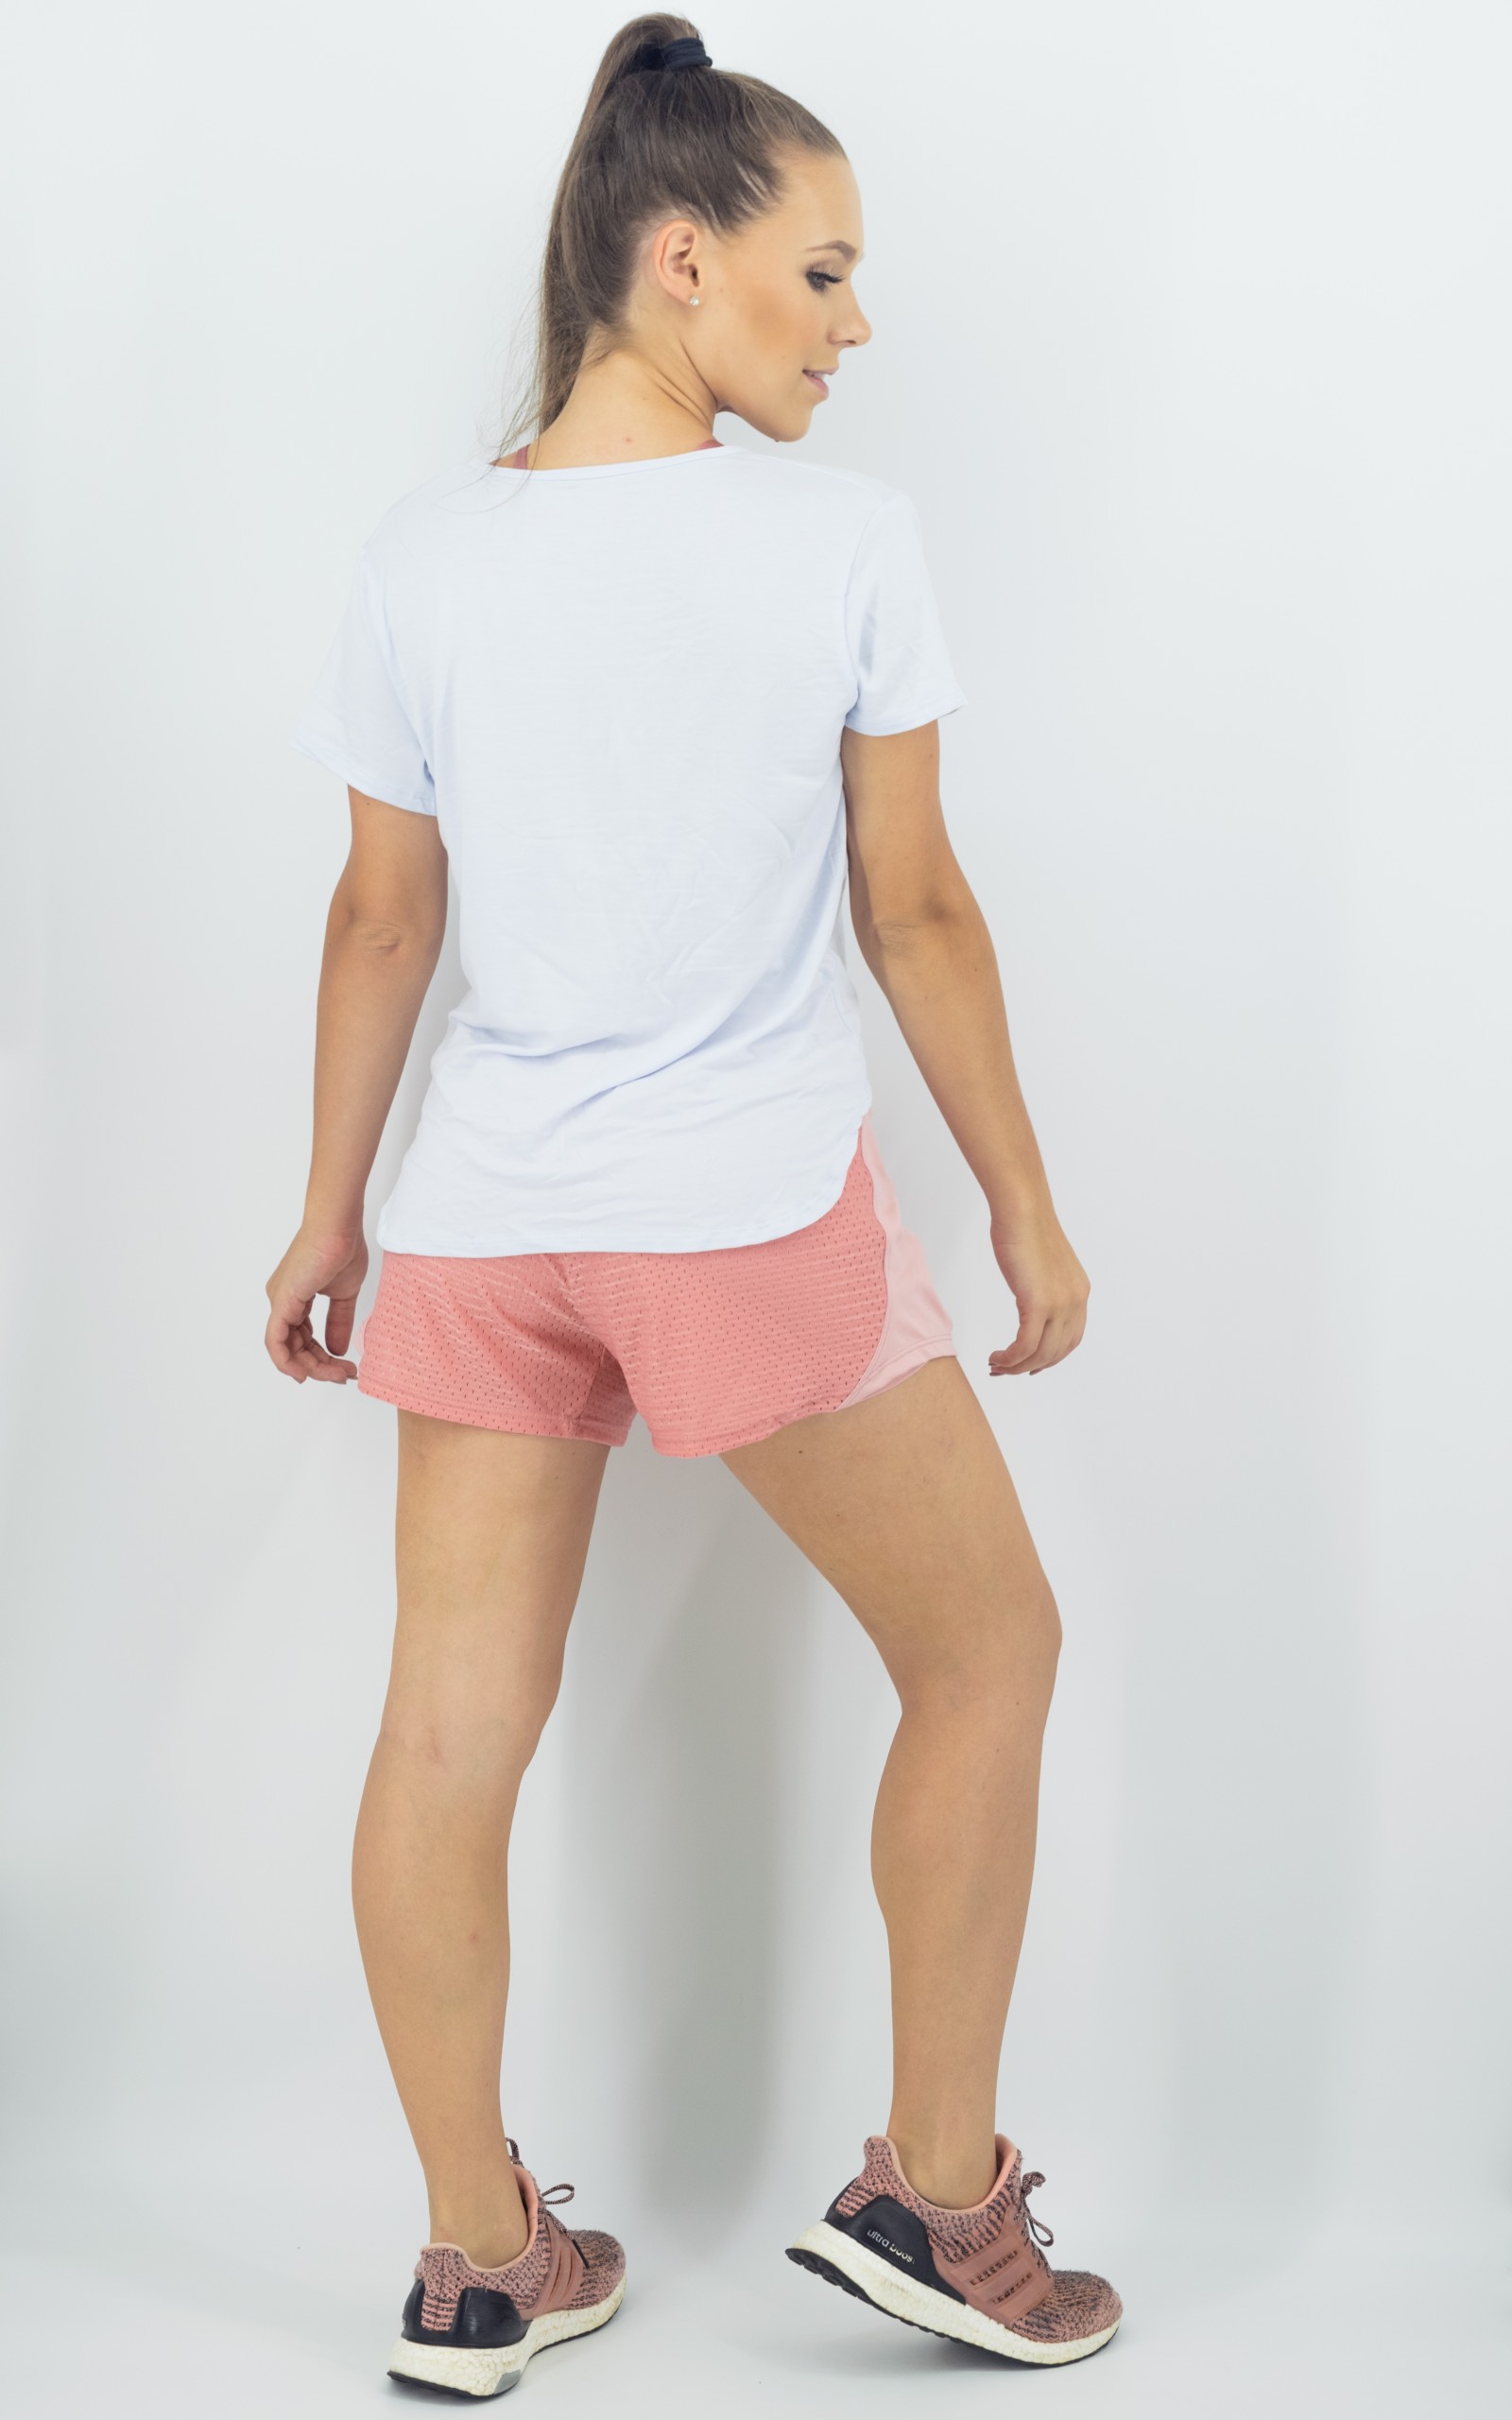 Blusa Amazing Branco, Coleção Move Your Body - NKT Fitwear Moda Fitness